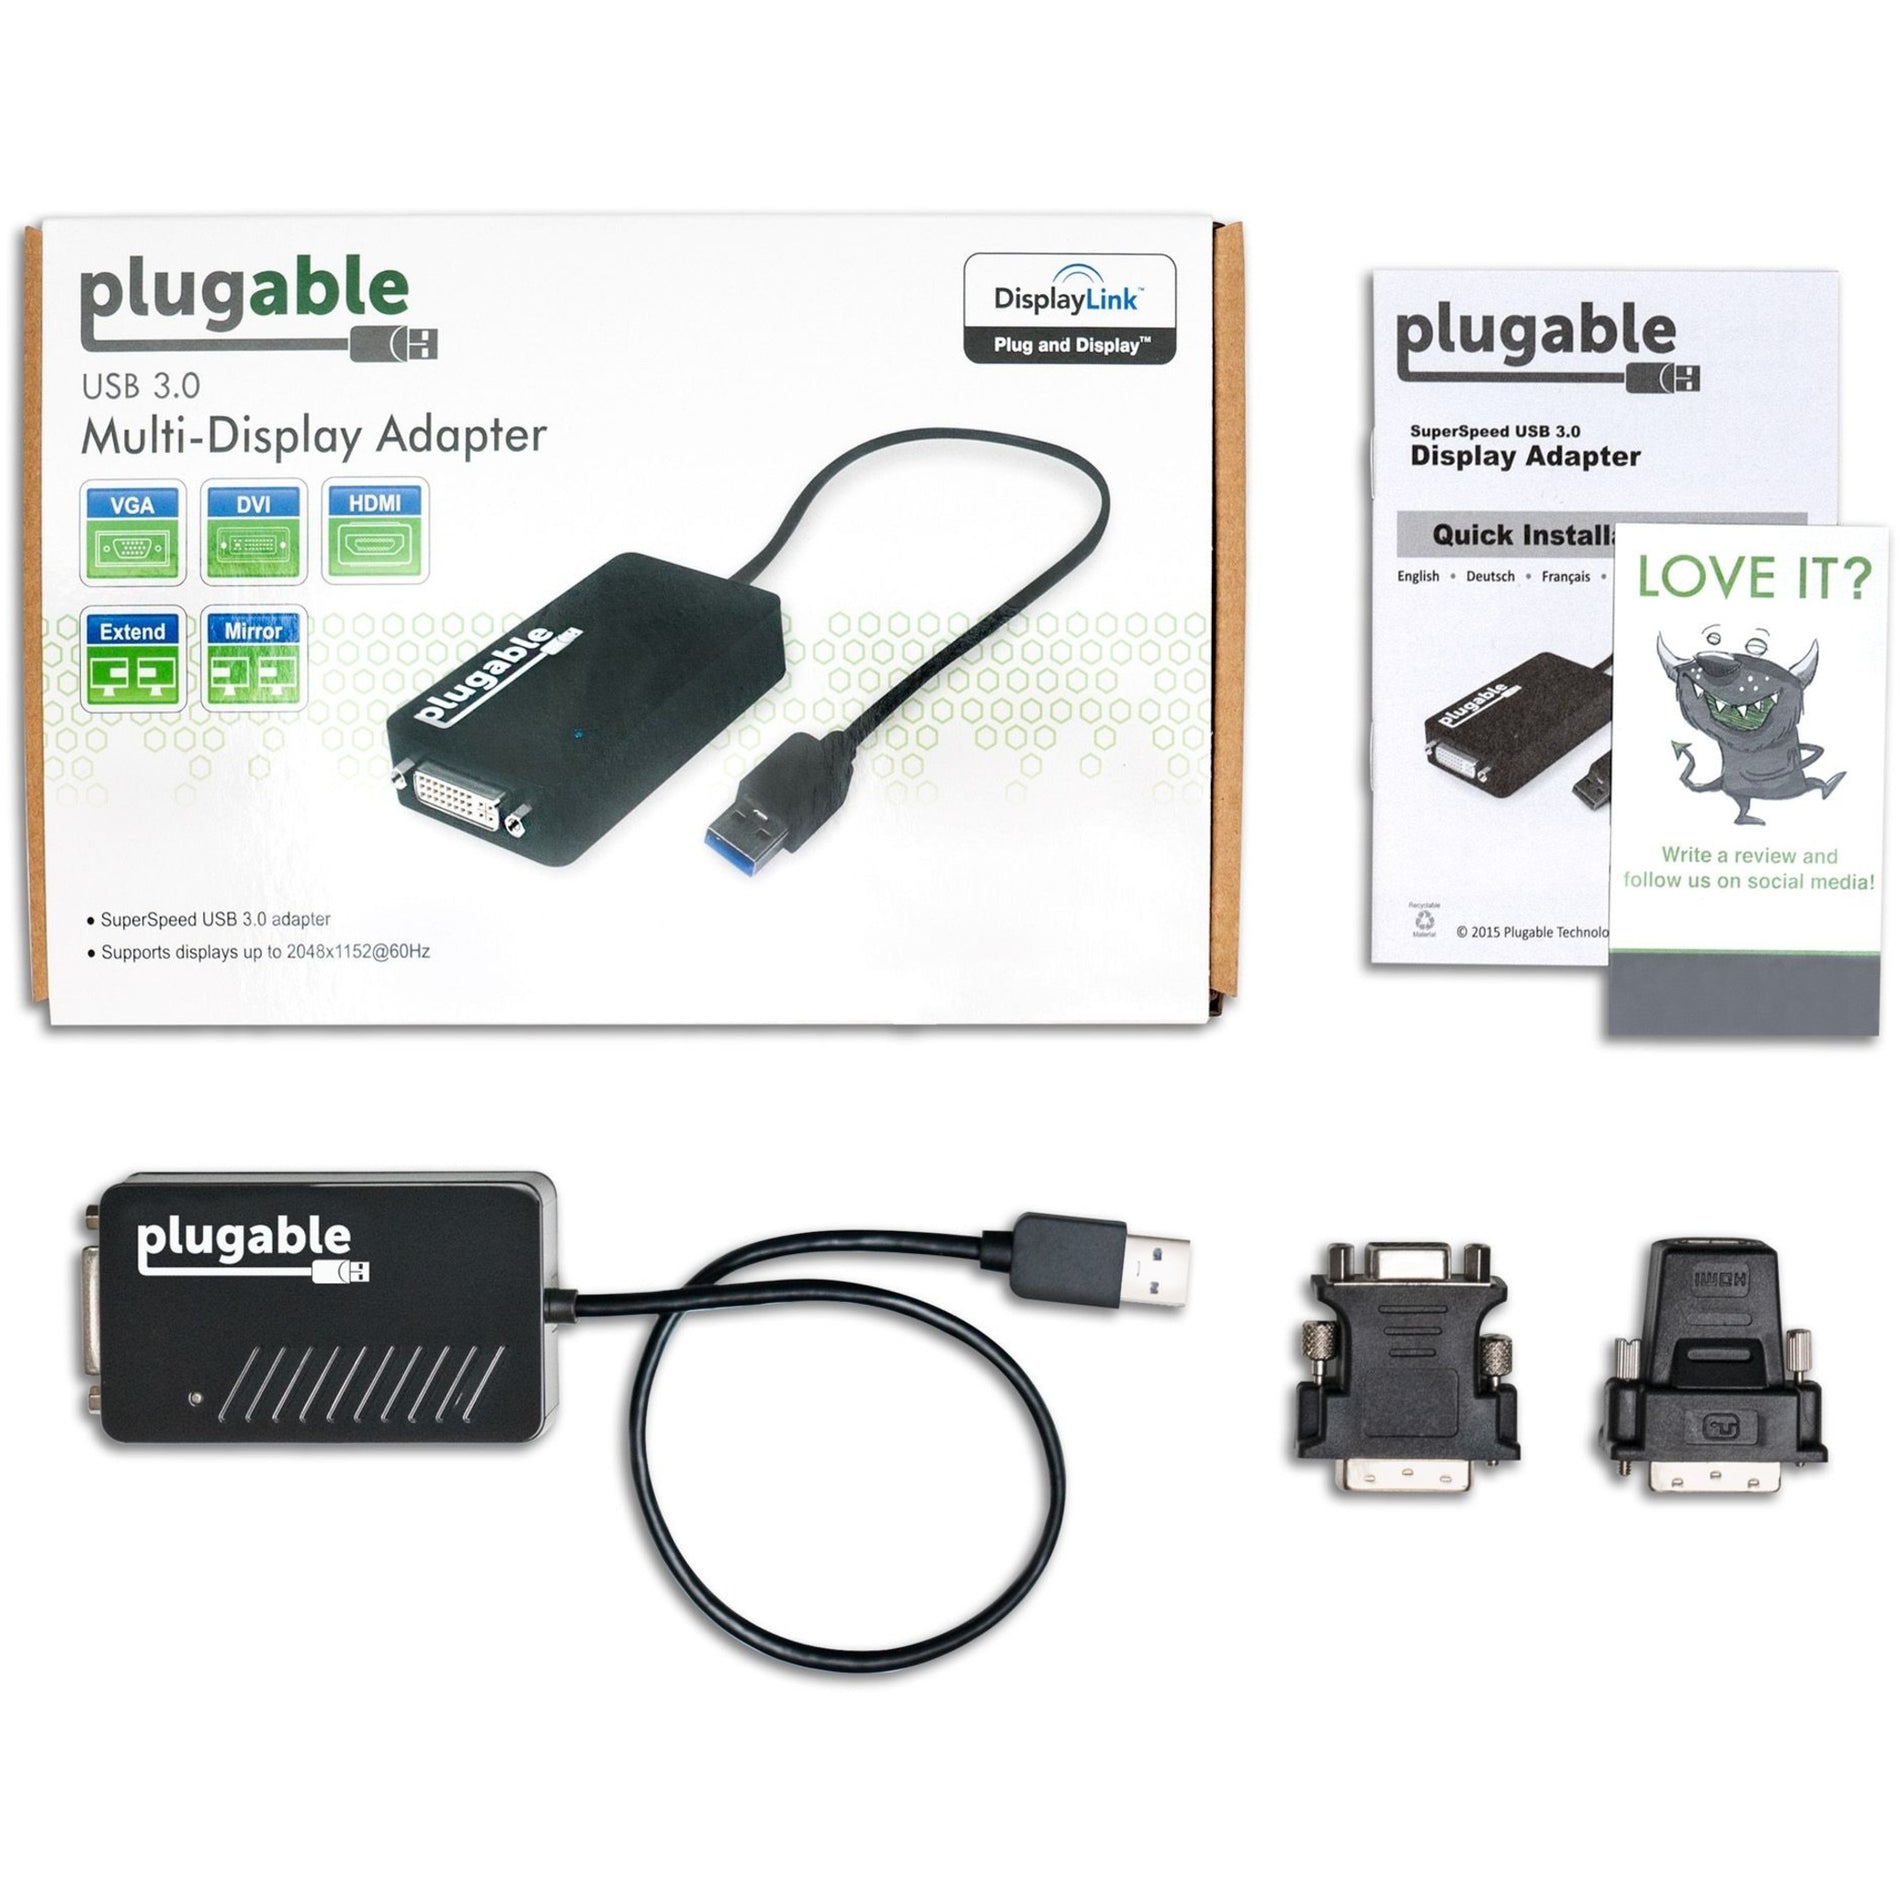 بلوغابل UGA-3000 محول HDMI/DVI/VGA USB 3.0 لعرض متعدد الشاشات، توسيع العرض بسهولة للكمبيوتر العلامة التجارية: Plugable